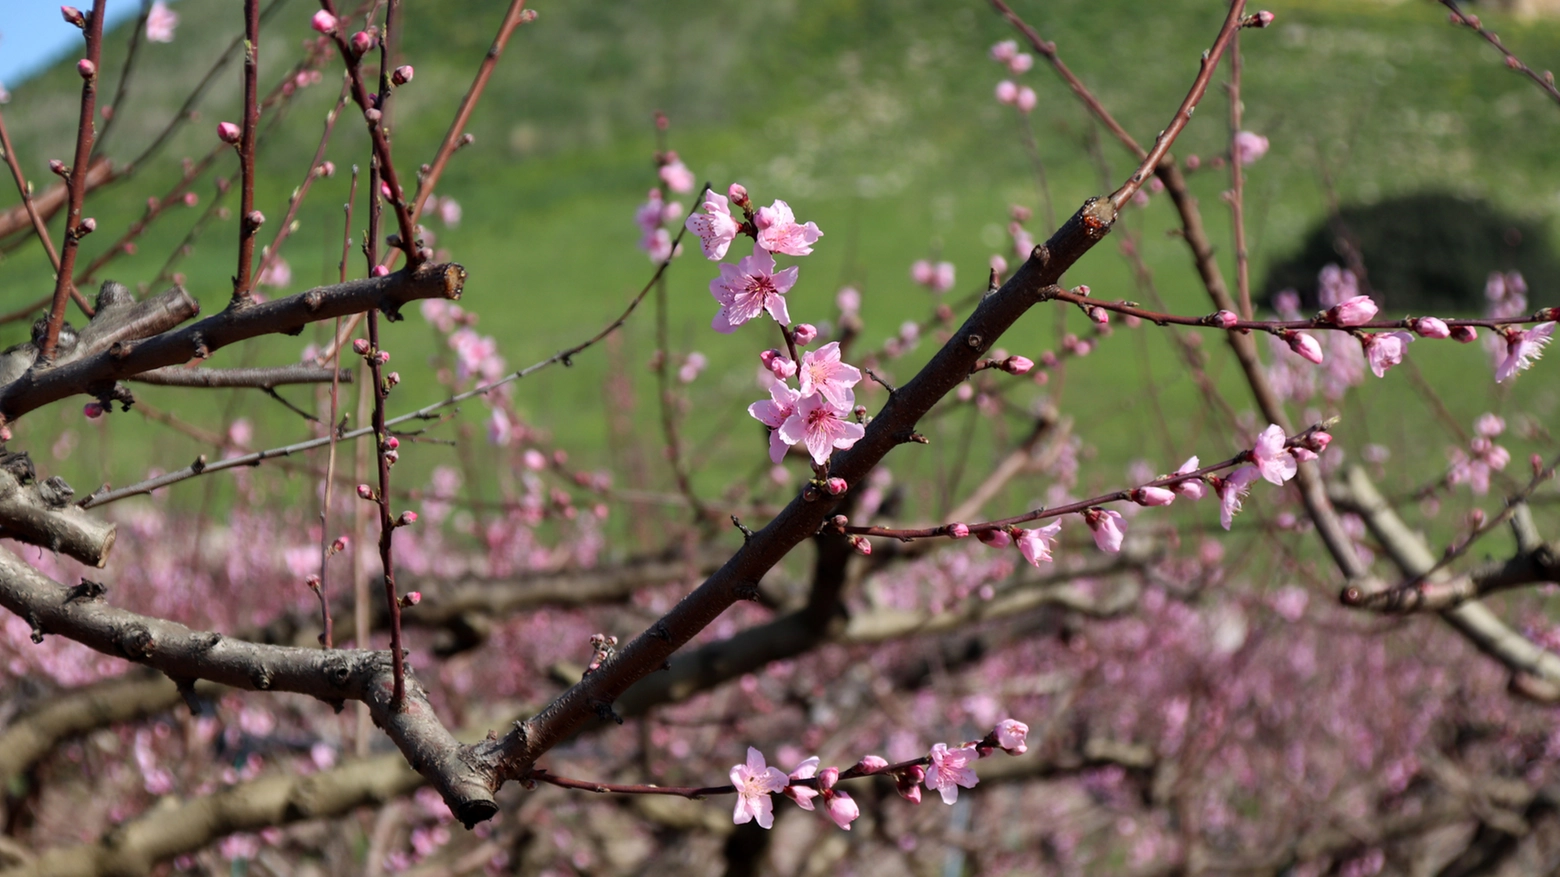 Equinozio di primavera - Crediti iStock Photo